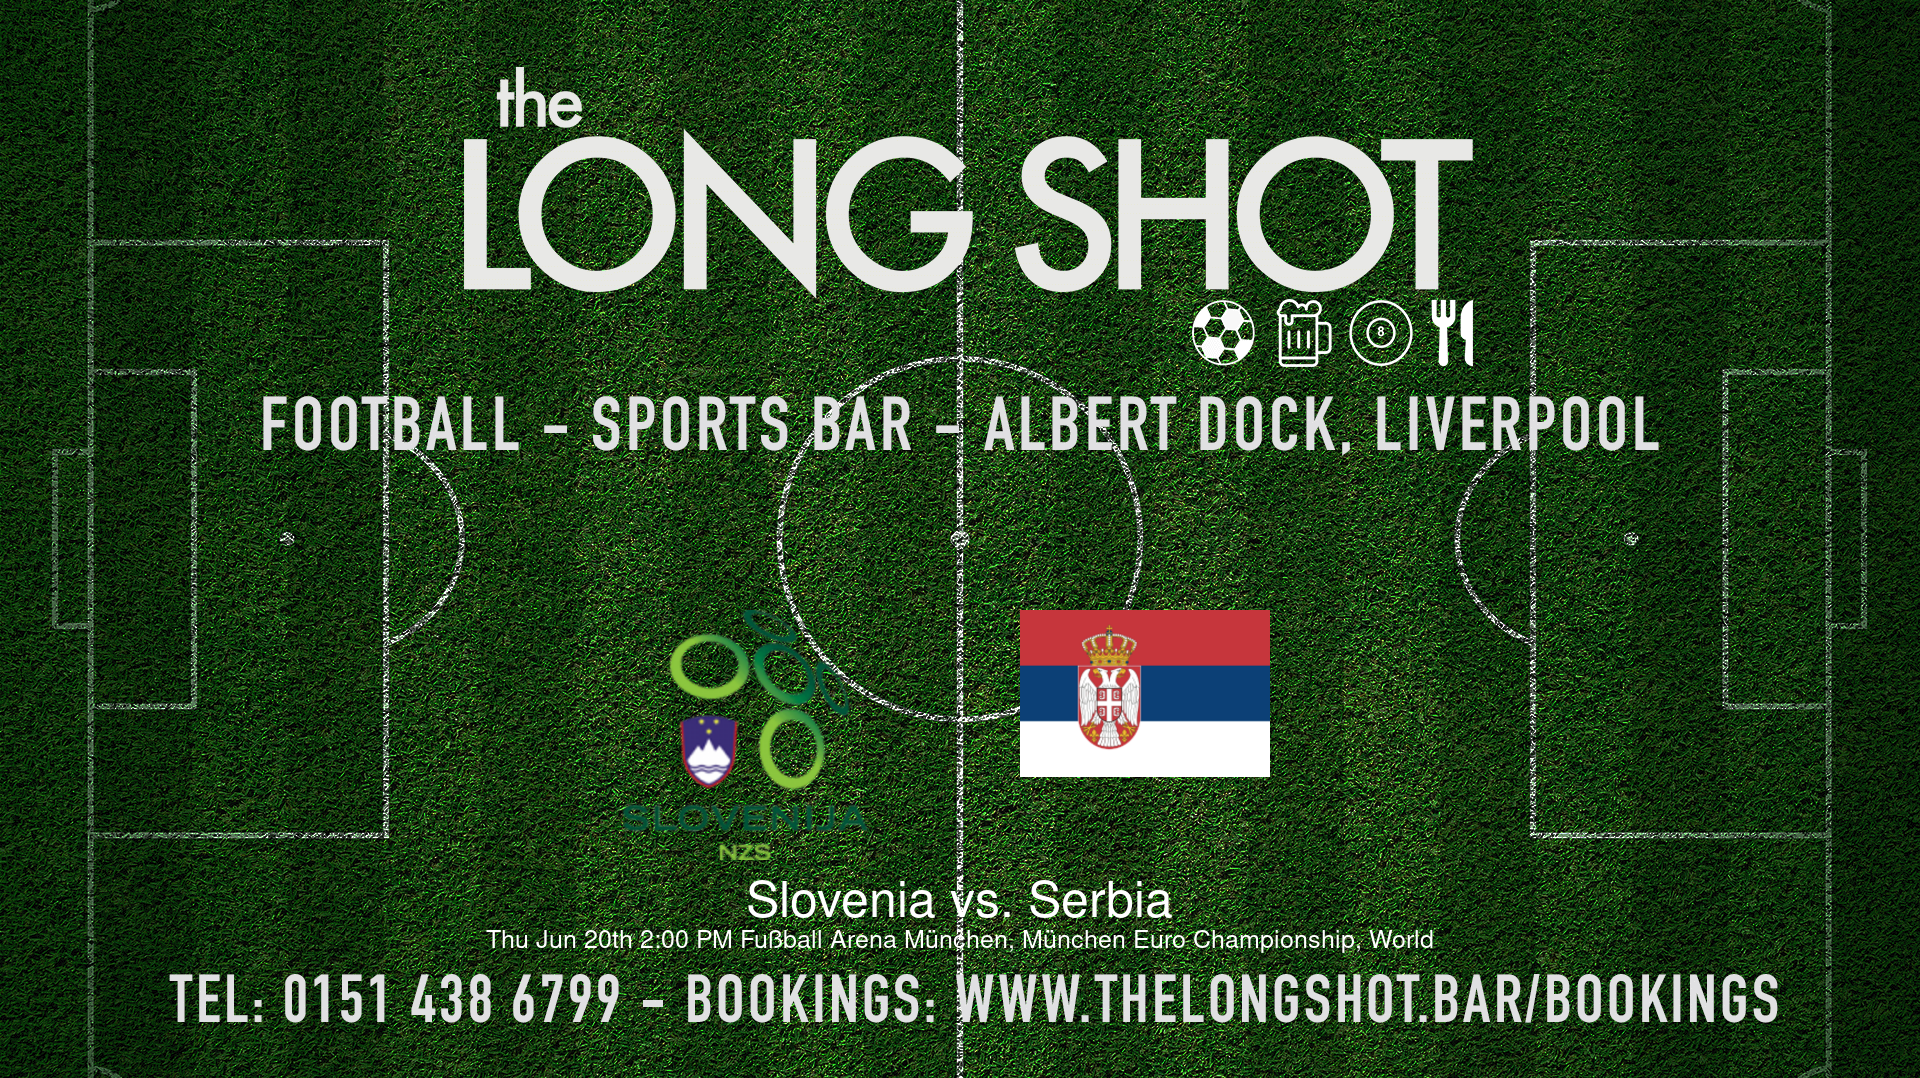 Event image - Slovenia vs. Serbia